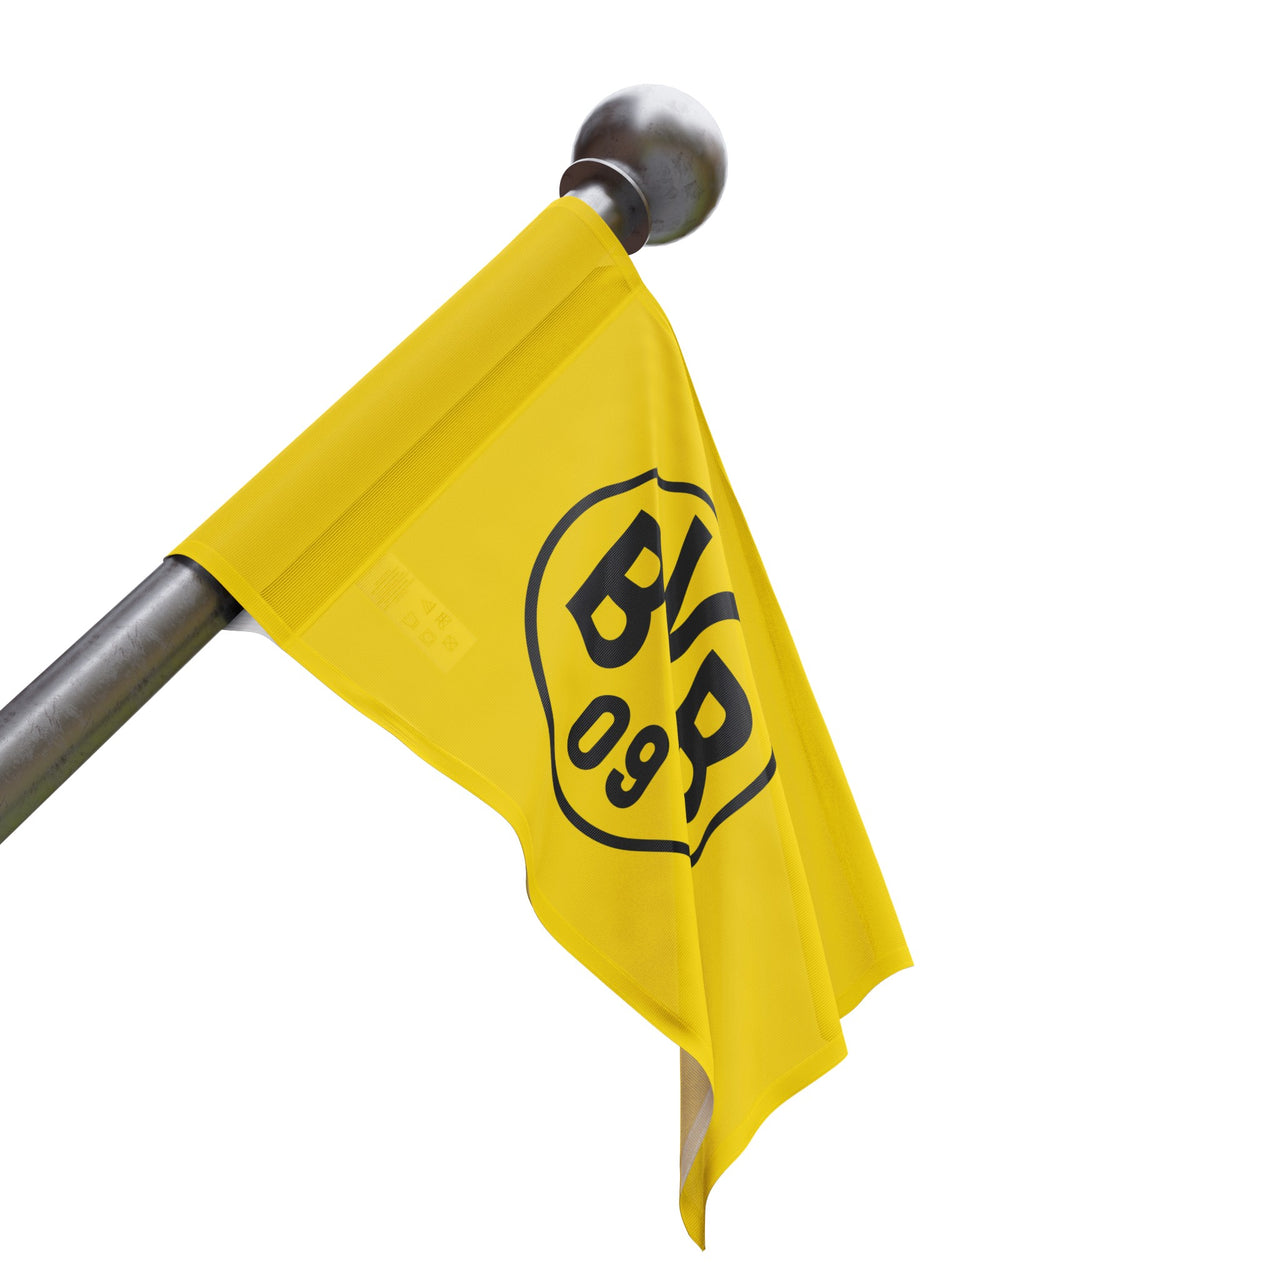 Borussia Dortmund Flag